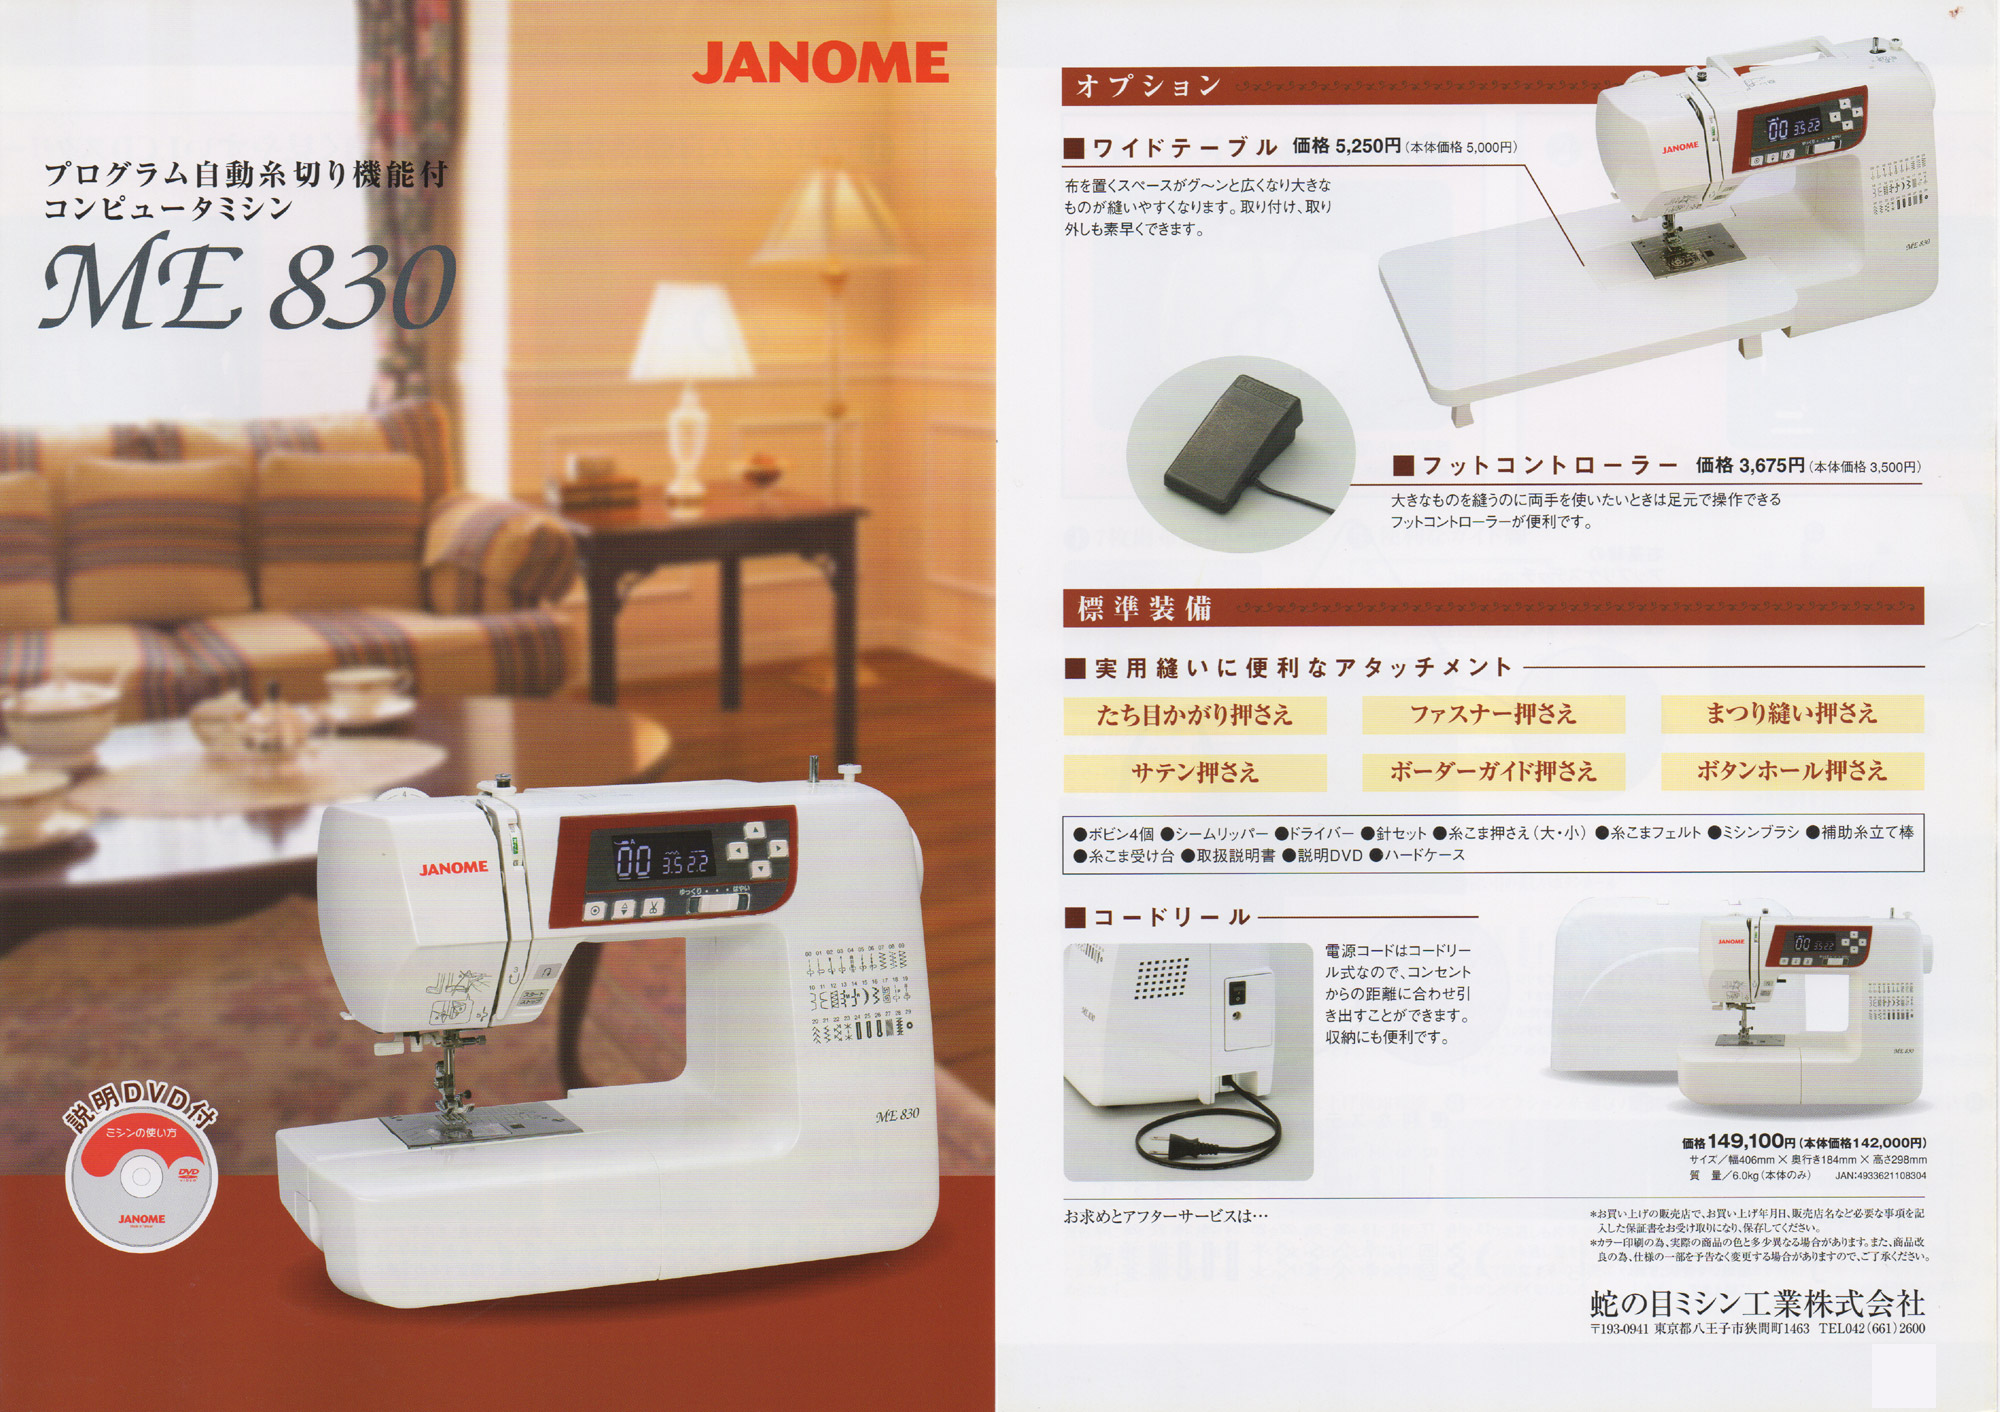 ジャノメコンピューターミシンME830☆激安特価で販売中！